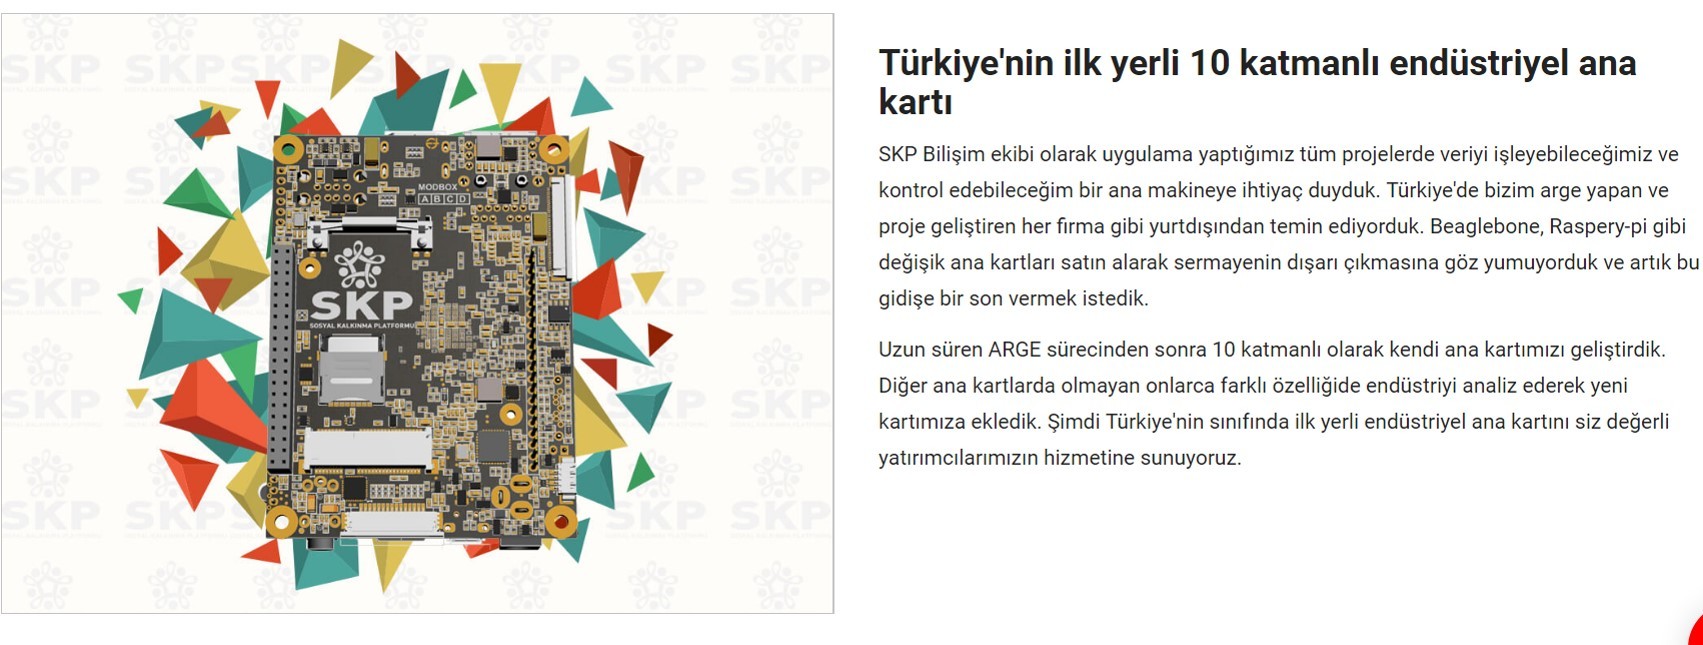 Somut adımlar atmış, Türkiye'nin geleceği için çalışan yatırım platformu: SKP